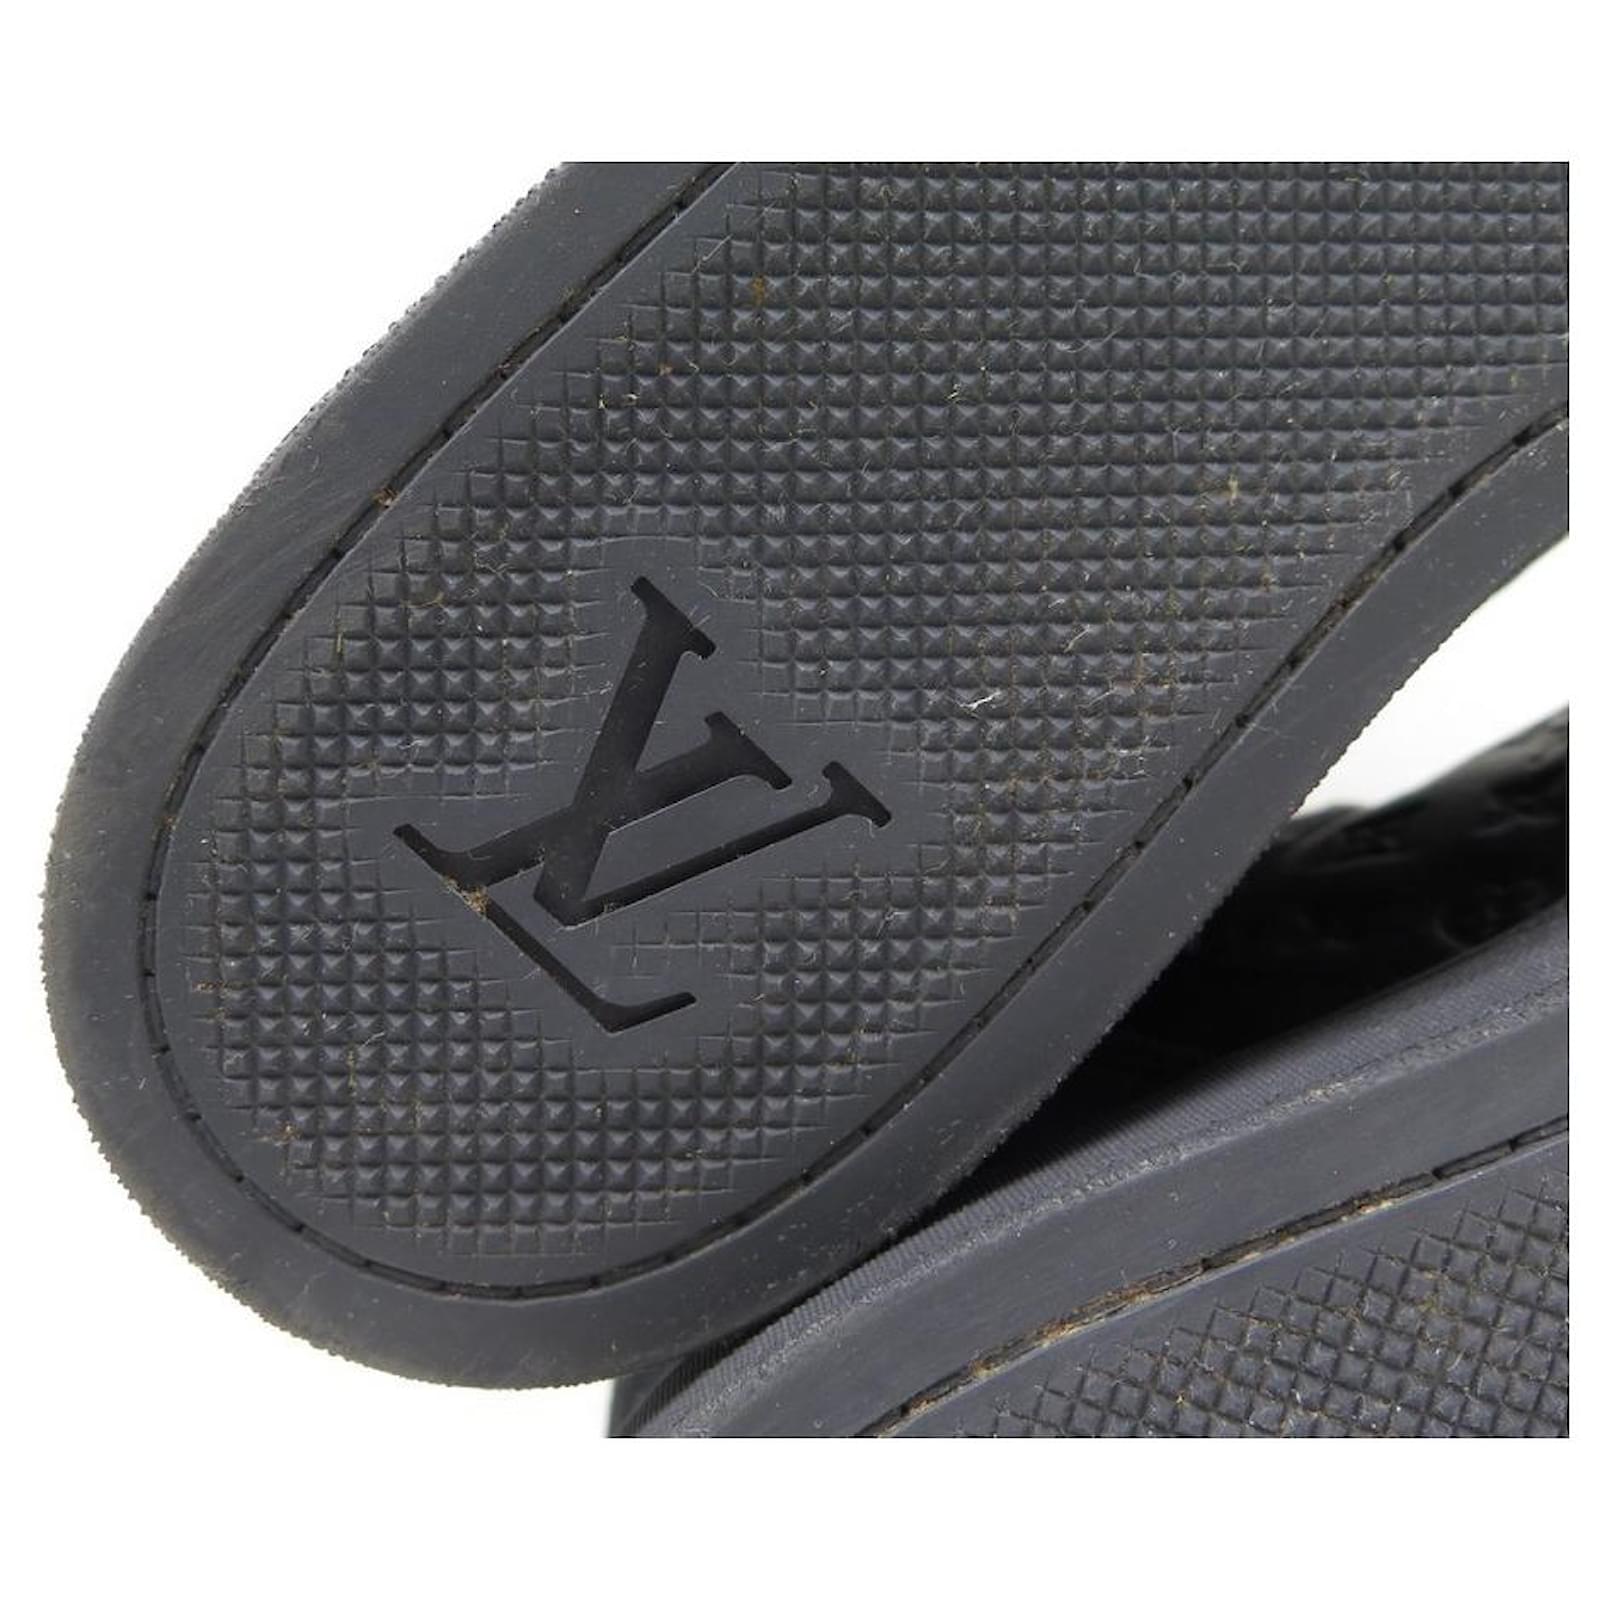 LOUIS VUITTON sneakers SHOES 36.5 BLACK LEATHER MONOGRAM BLACK